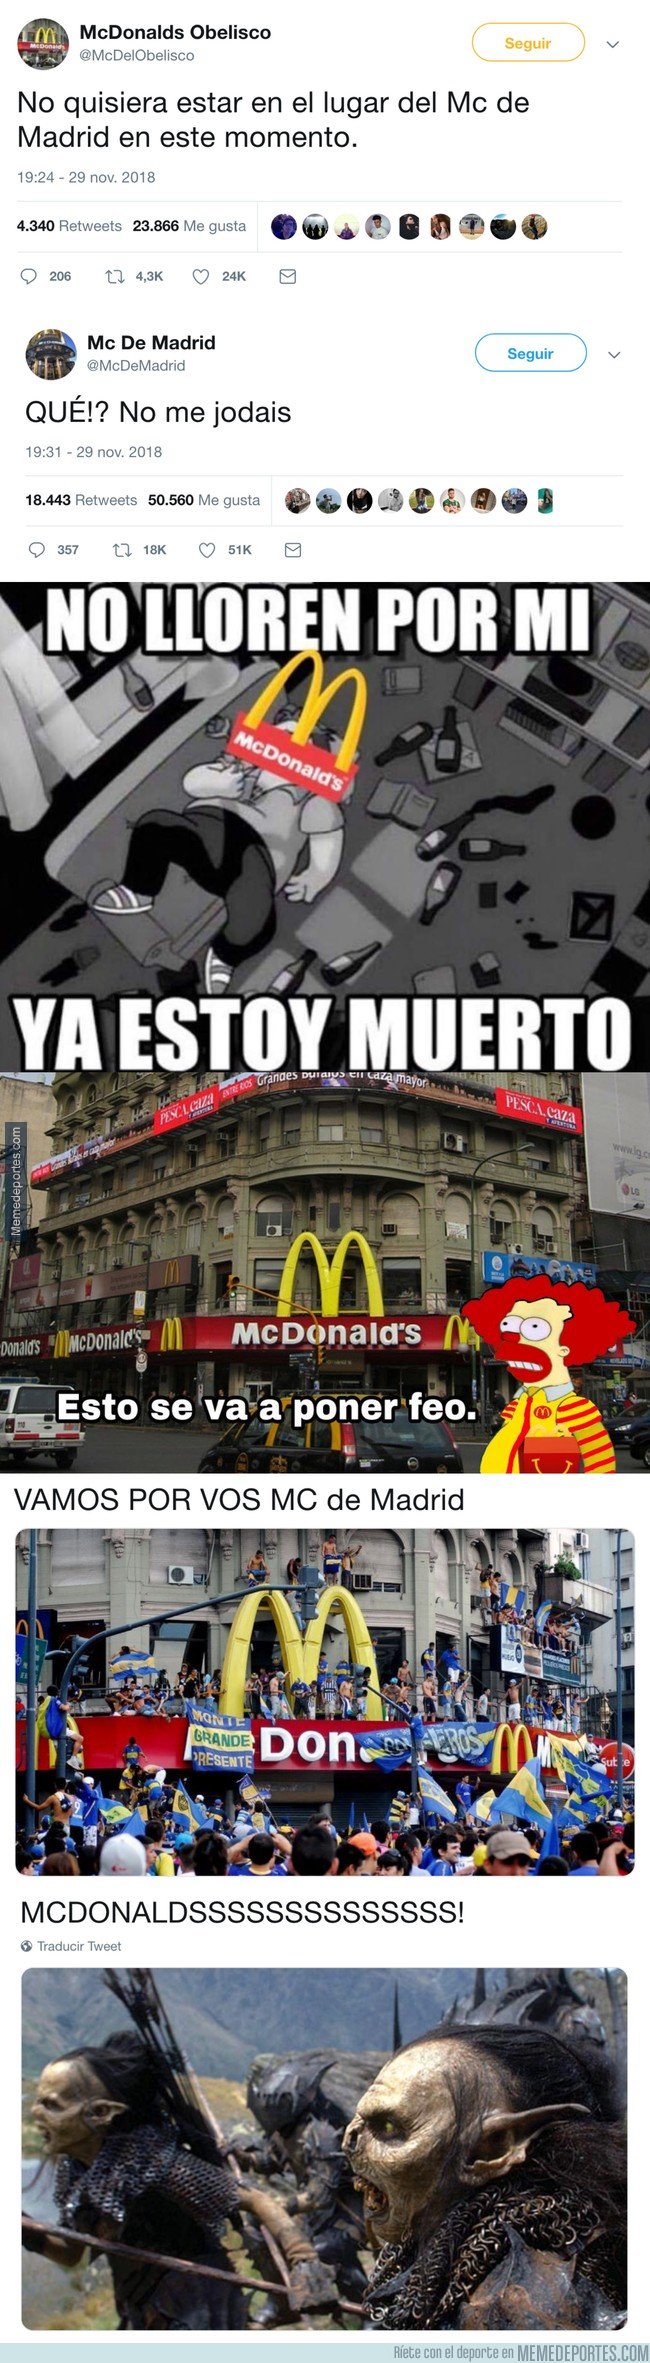 1057751 - El McDonalds del Obelisco avisa mediante Twitter al de Madrid de la que se va a liar